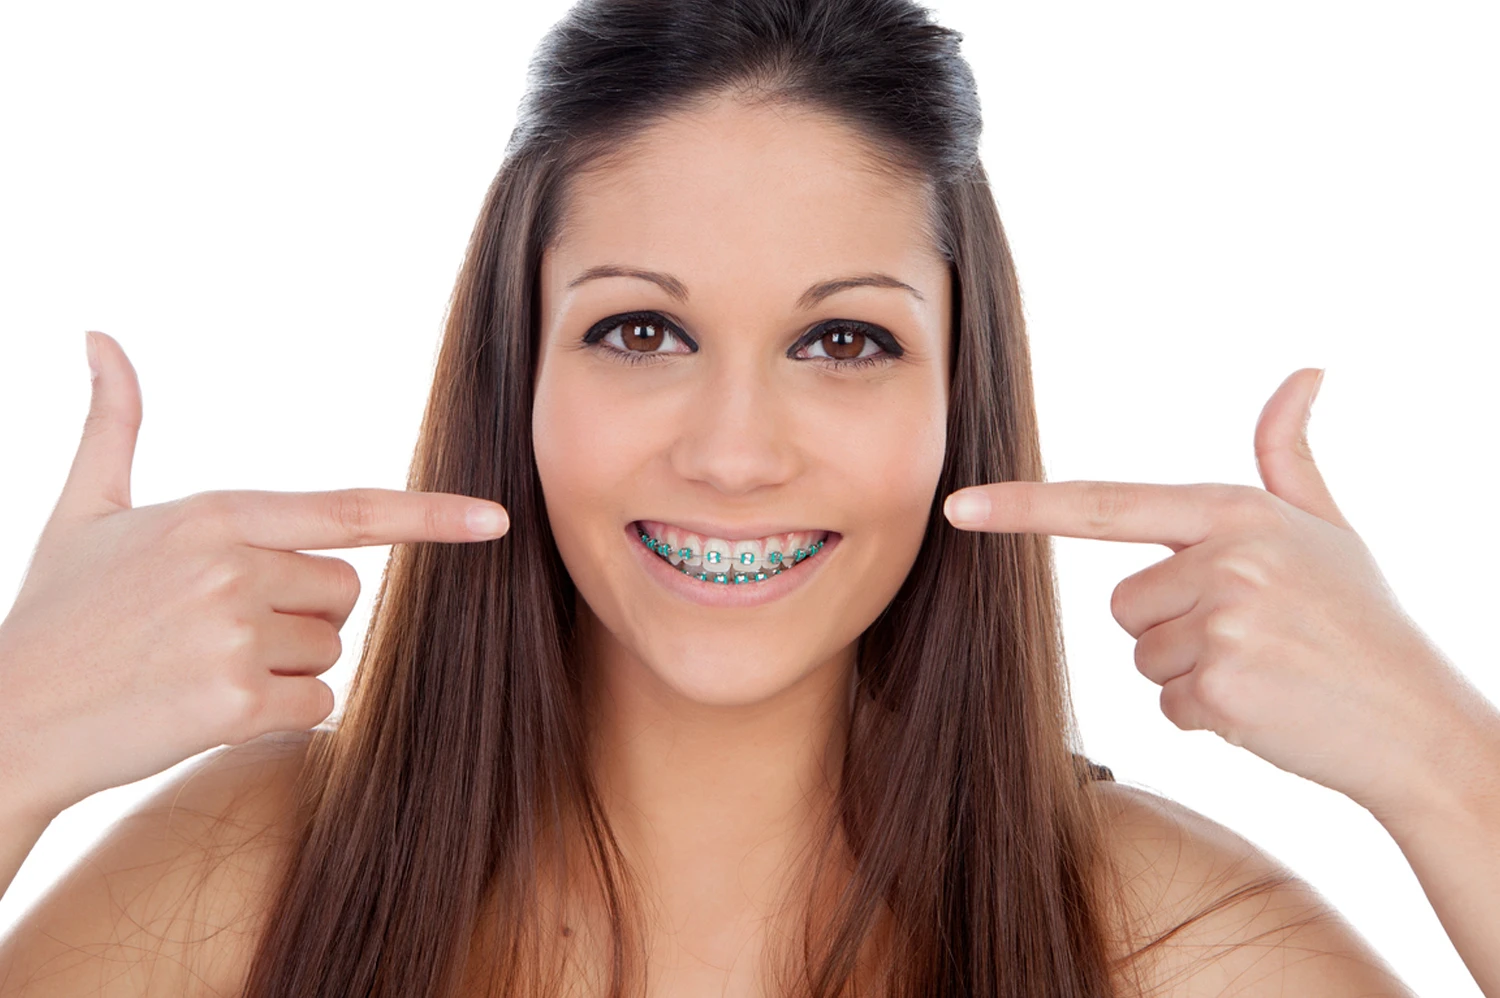 Teenage girl wearing orthodontic braces